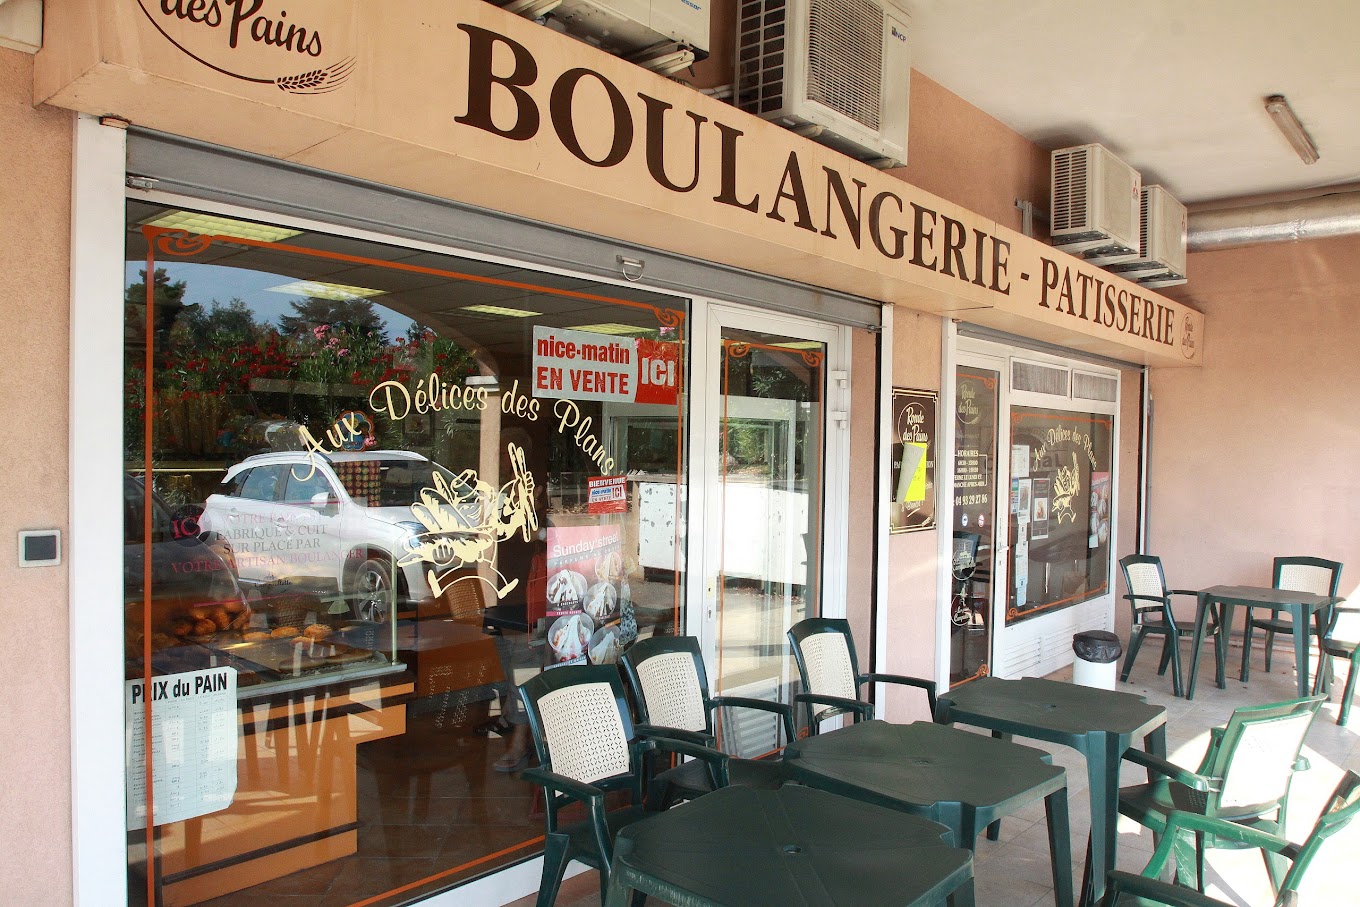 A vendre boulangerie dans l'arrière pays Niçois, à 30min de Nice et à 1h des montagnes du Mercantour. Située dans un secteur résidentiel, grand parking client à proximité, la boulangerie est située à côté d'autres commerces.